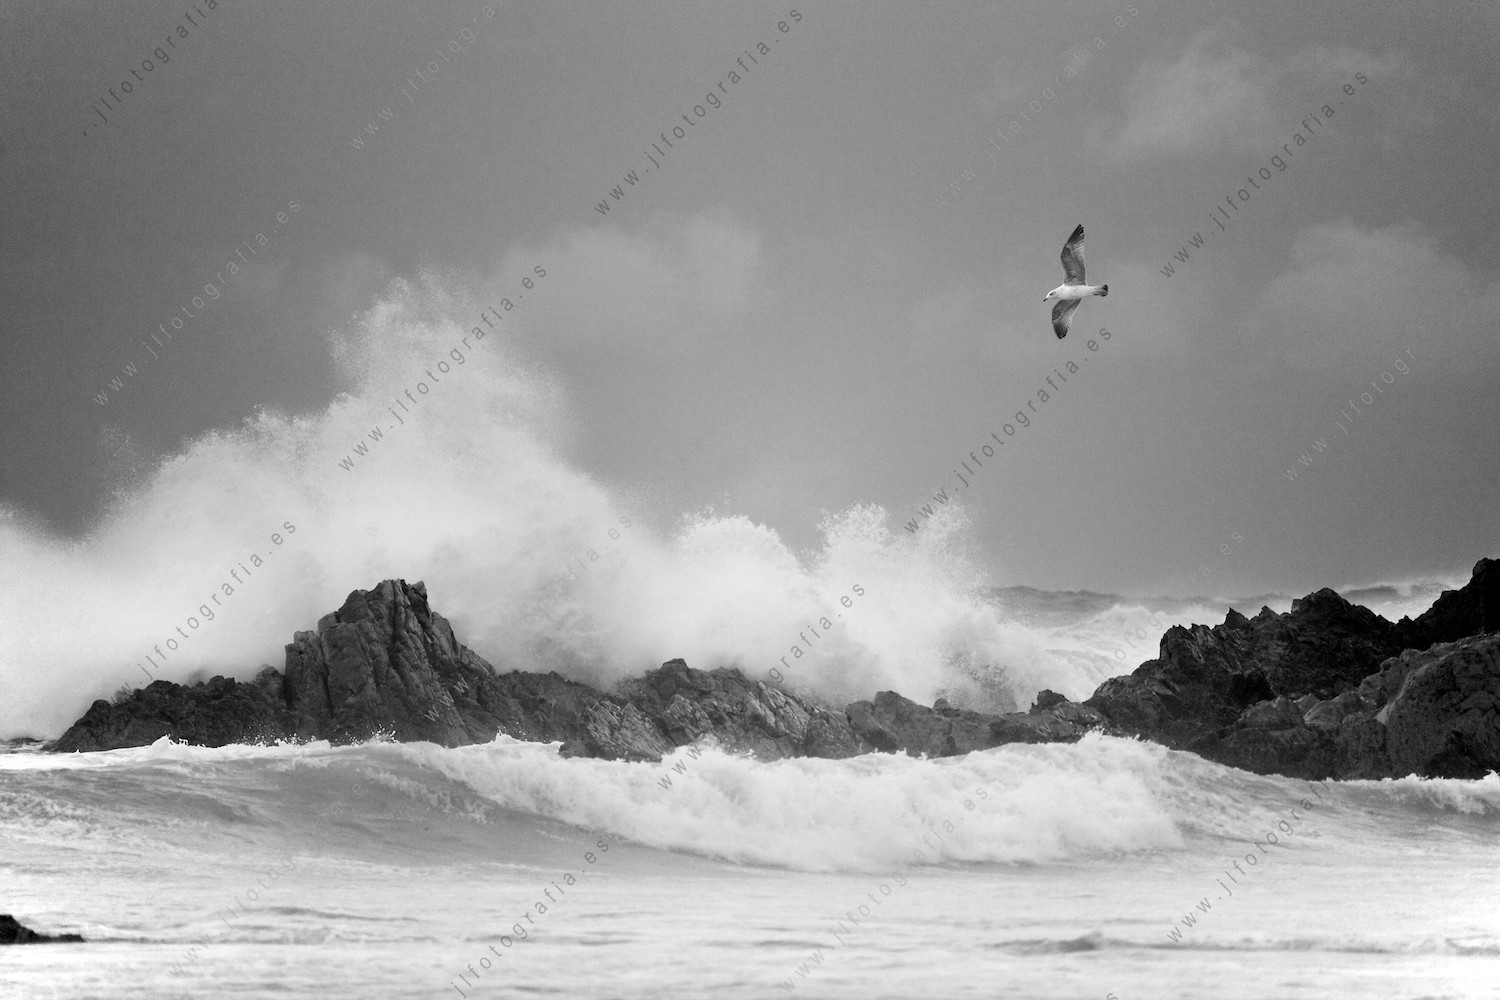 Una gaviota sobrevuela la orilla del mar sobre las violentas olas del temporal.